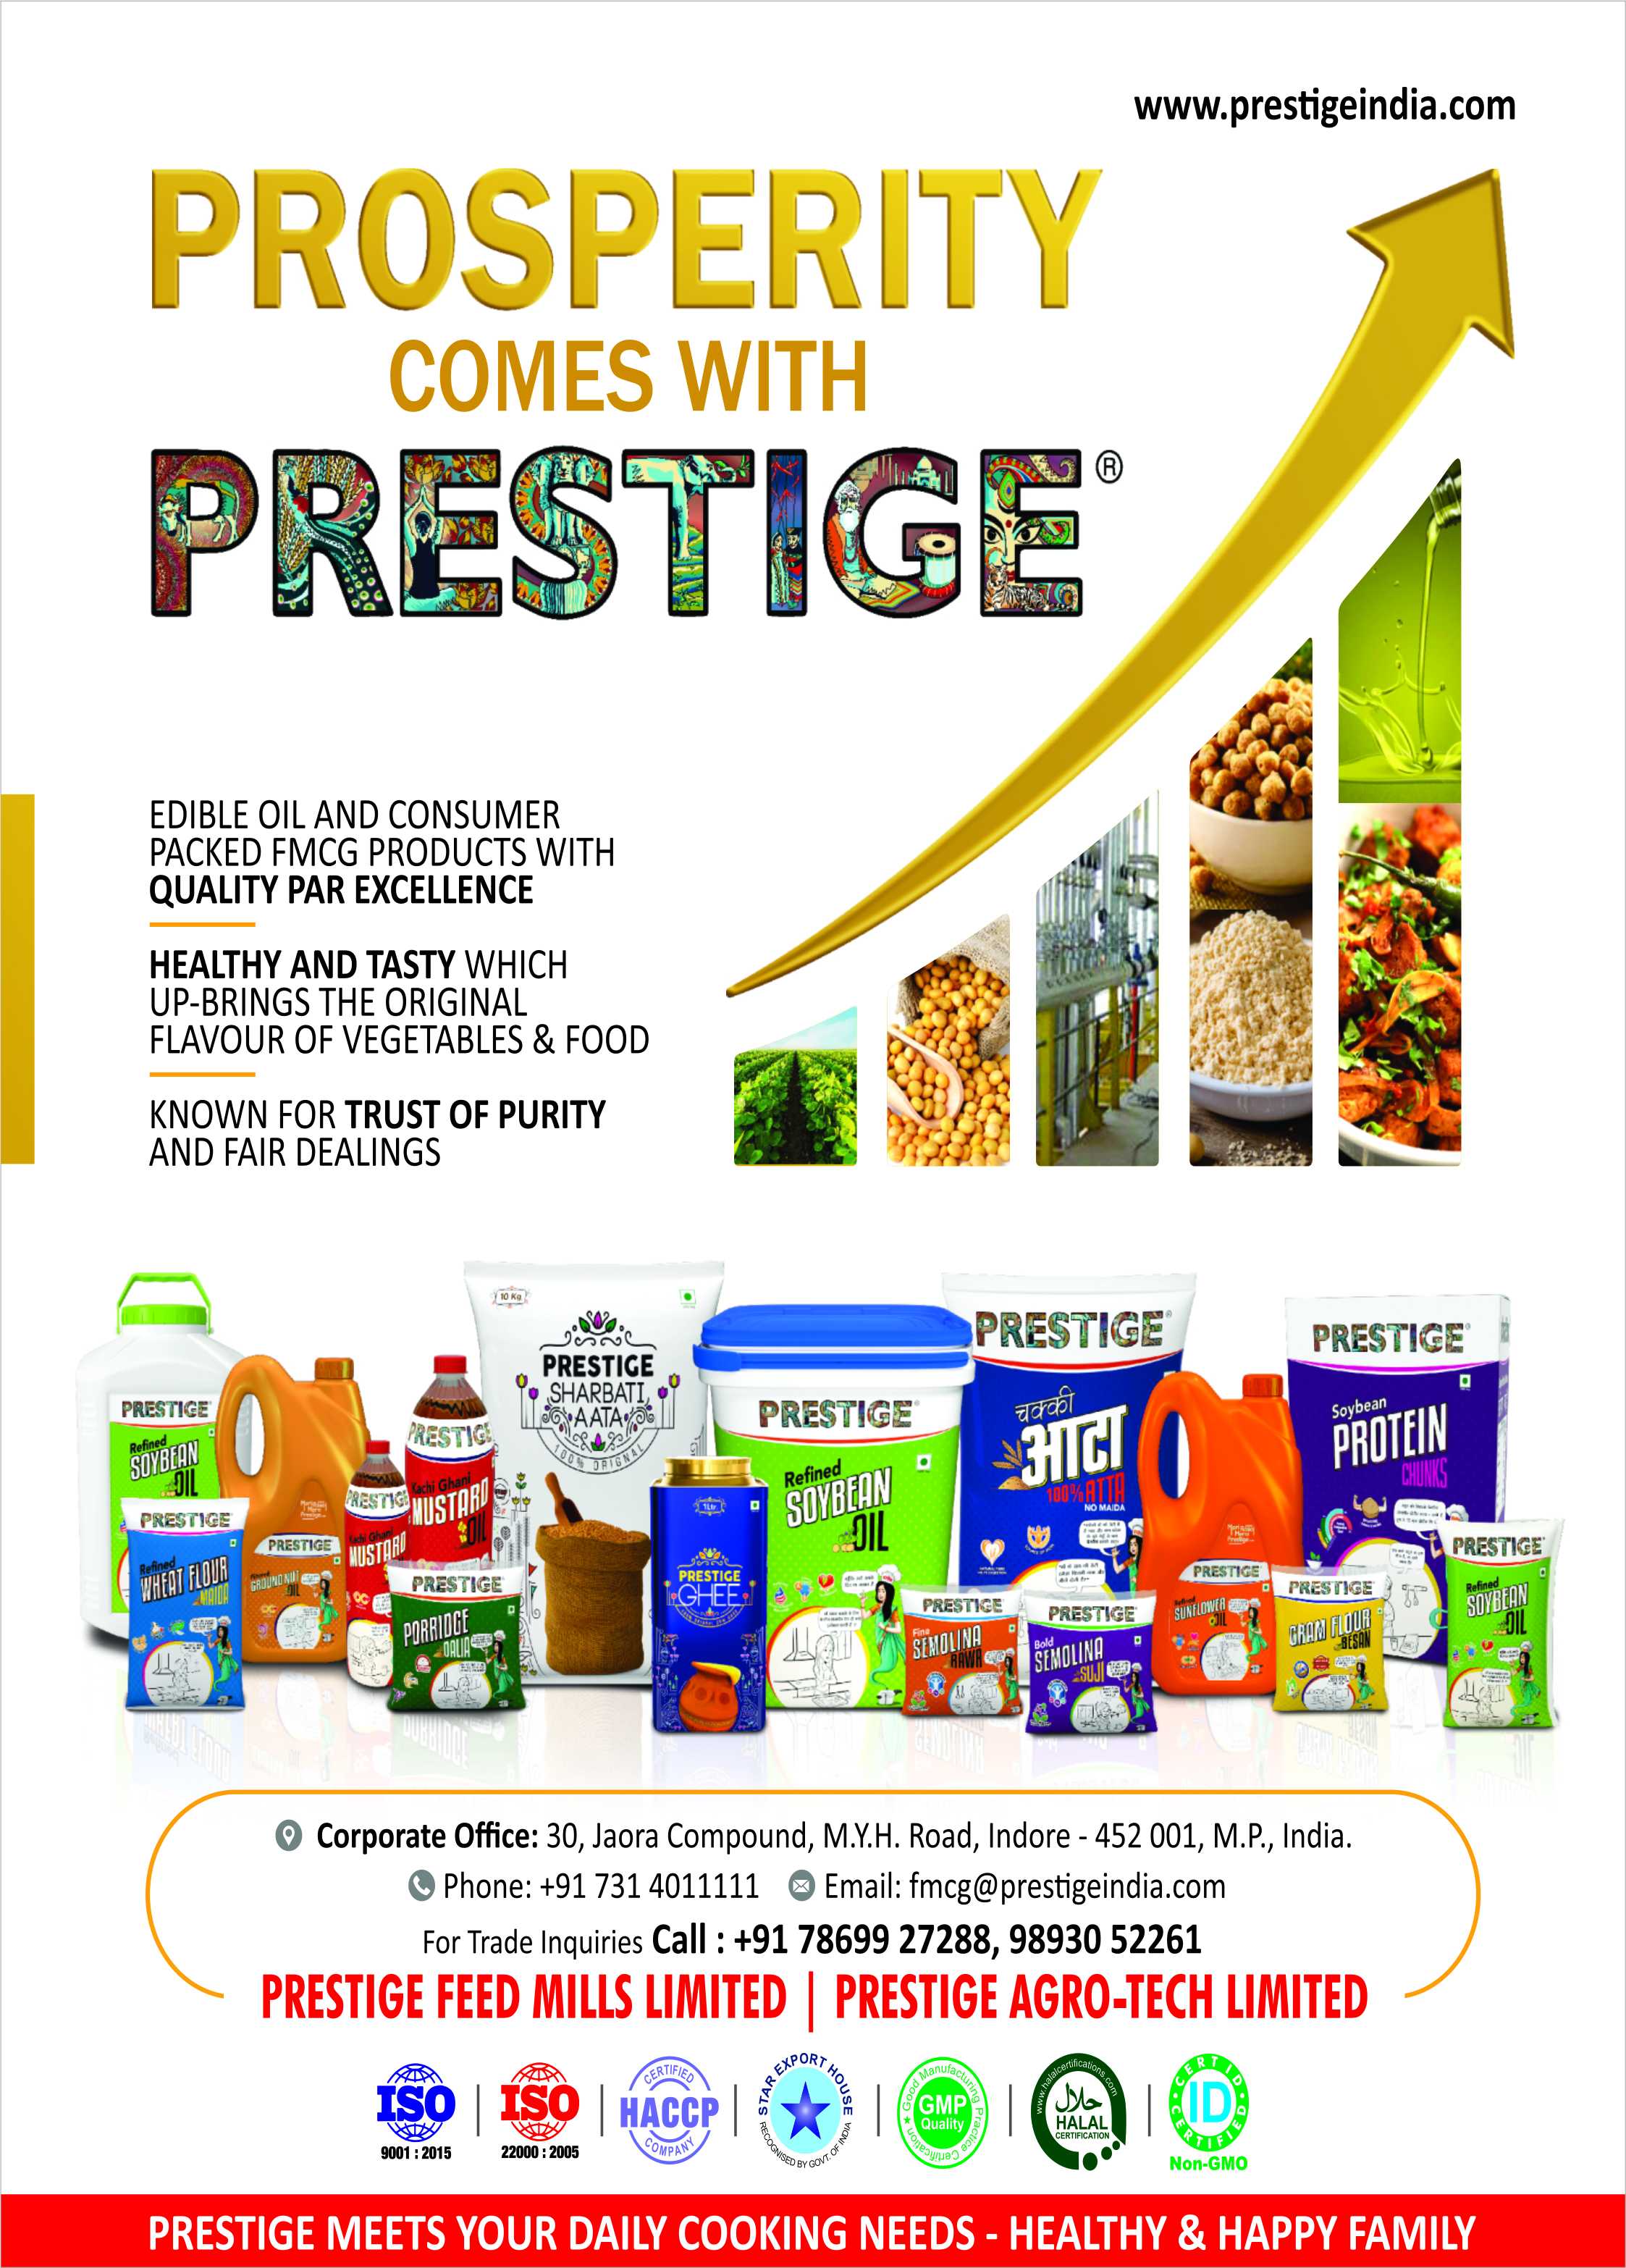 Prestige Feed Mills Ltd.